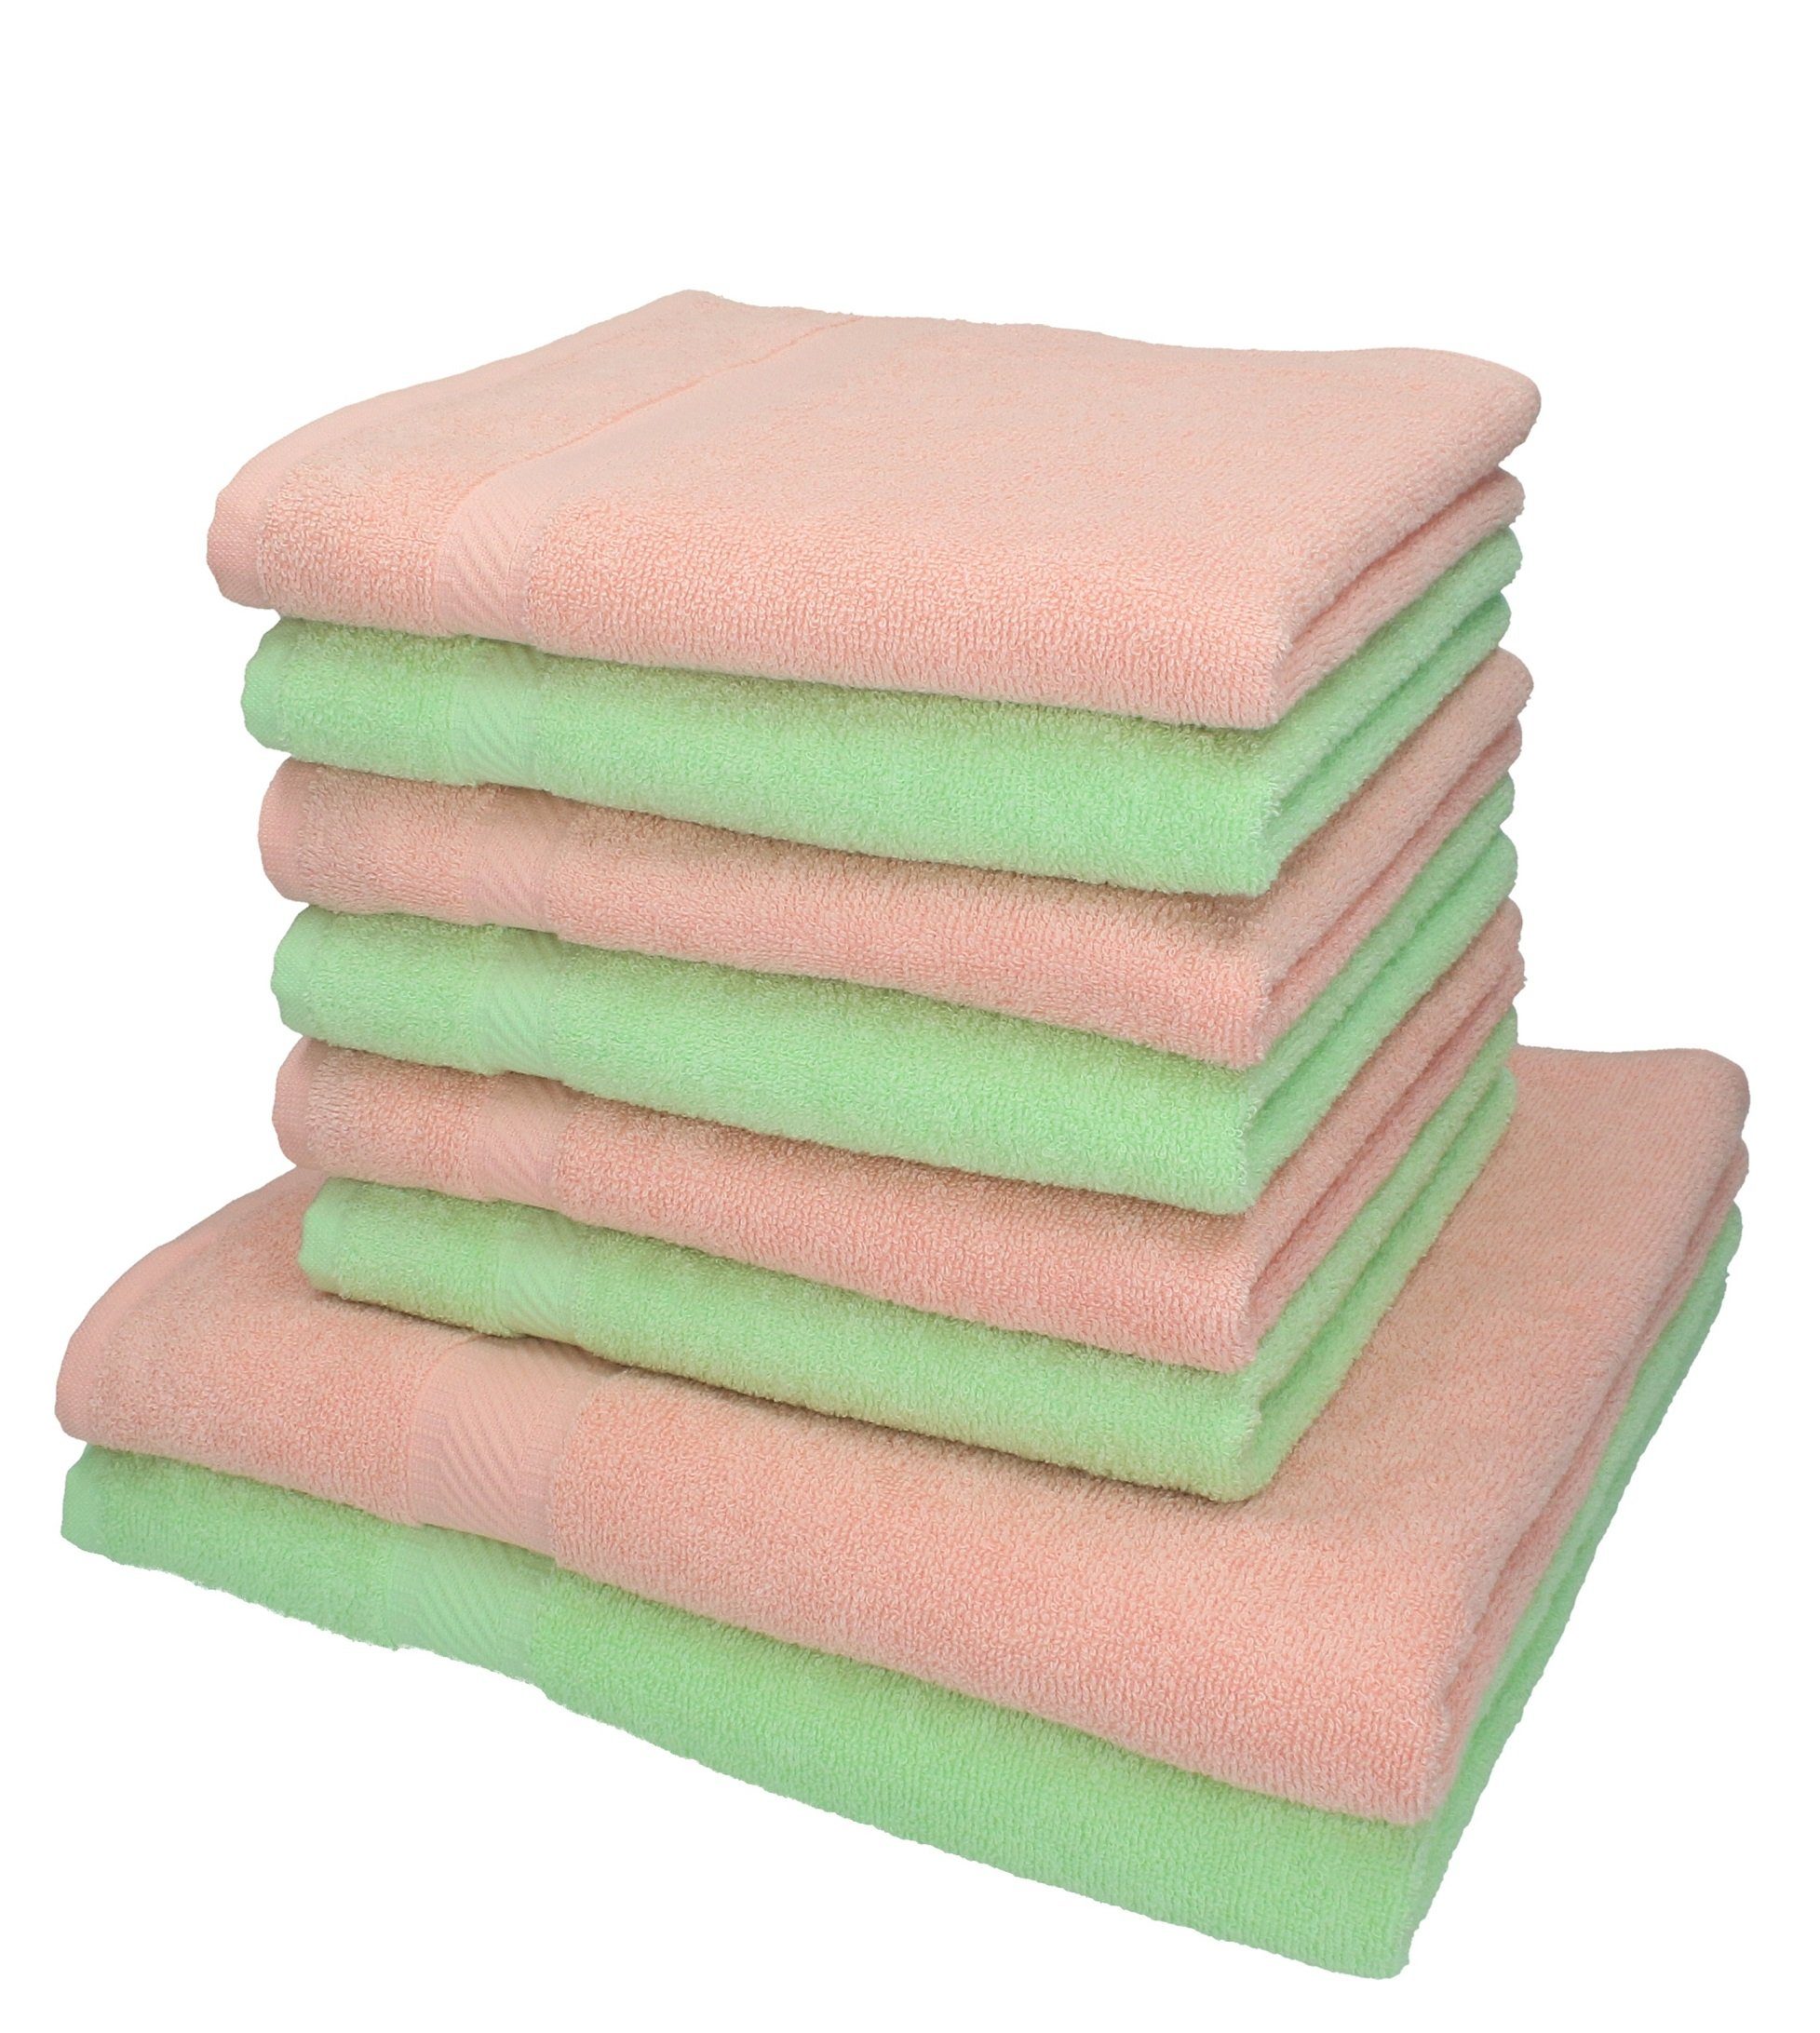 Betz Handtuch Set und grün, Farbe 8-tlg. 100% Palermo Handtuch-Set Baumwolle apricot